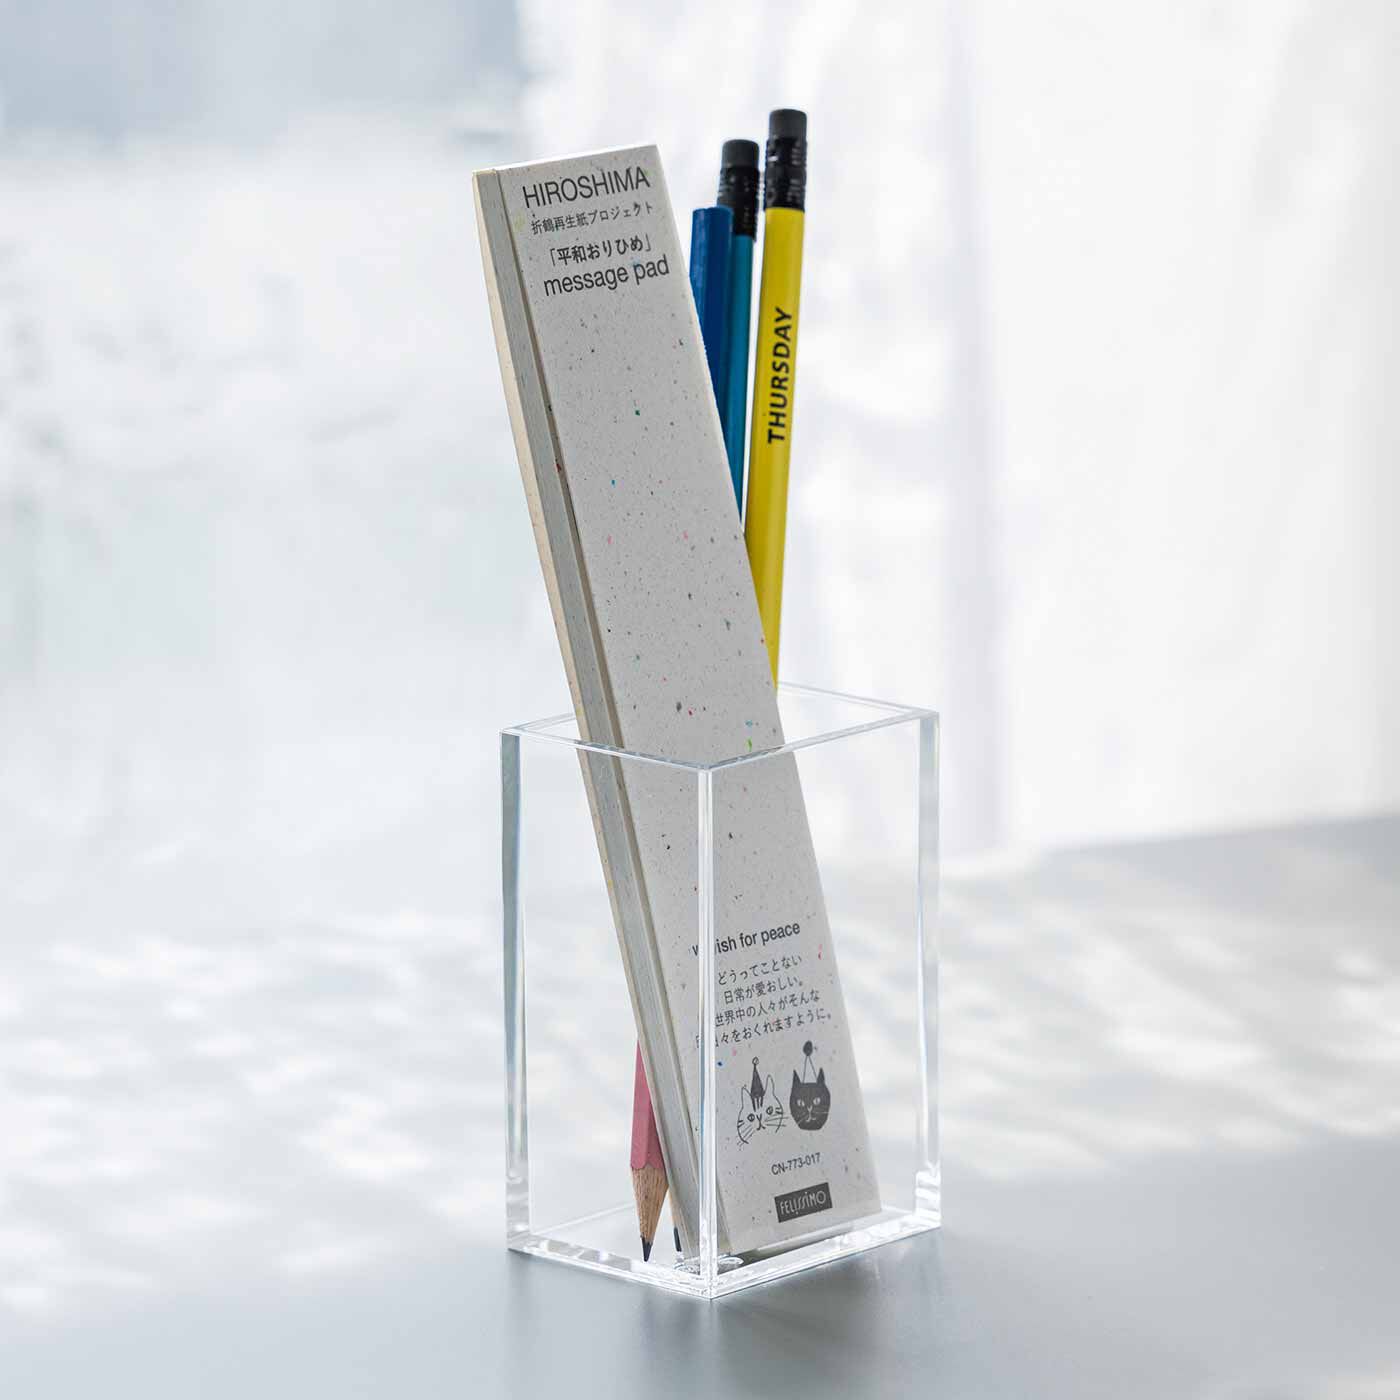 フェリシモメリー|フーズノート 折鶴再生紙プロジェクト「平和おりひめ」メッセージパッド2冊セット|ありそうでないペンと一緒に立てられる細長いサイズ。